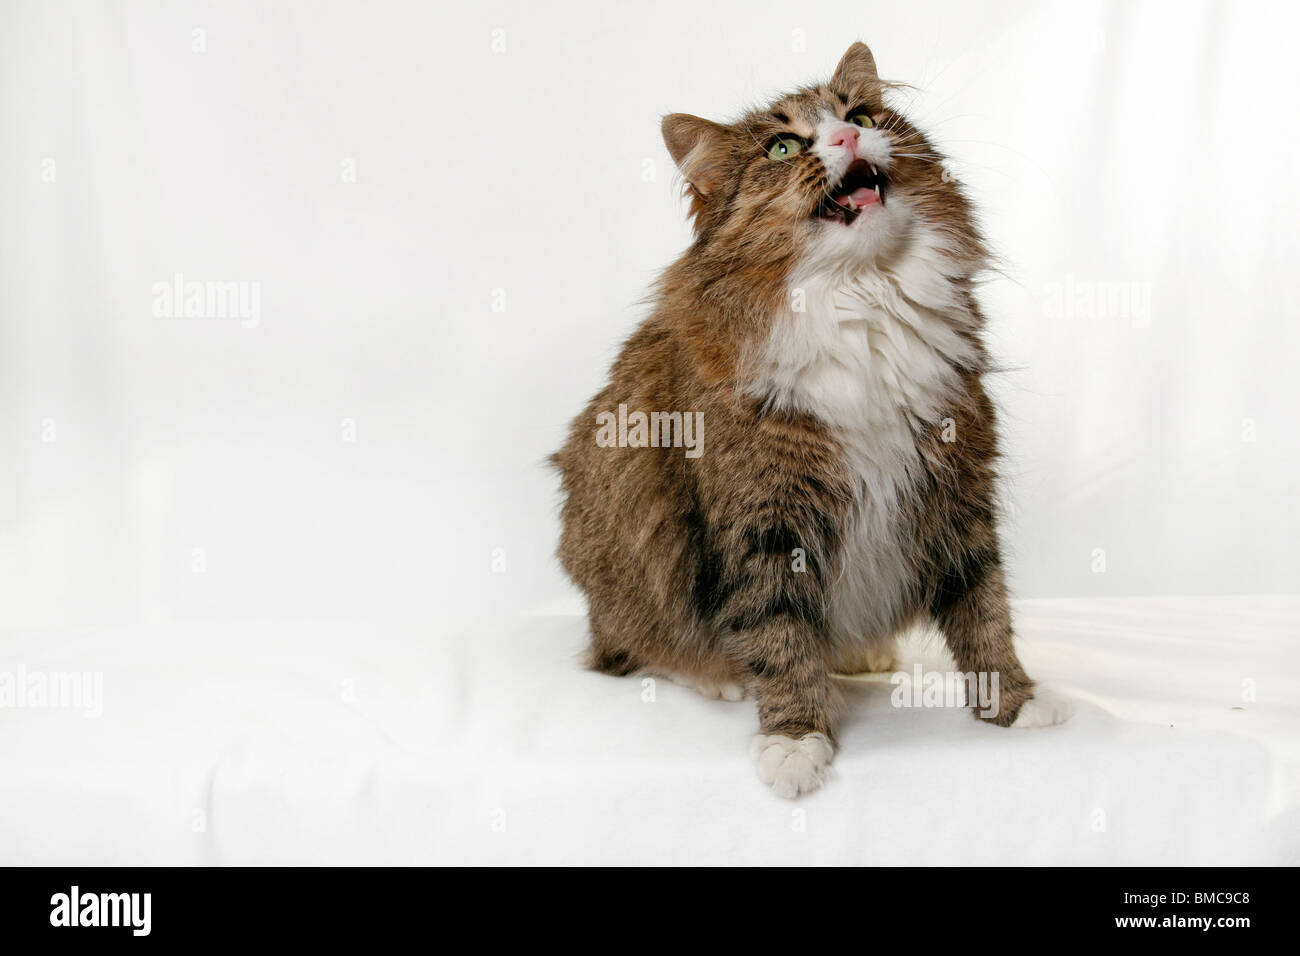 mautzende Katze / mewing cat Stock Photo